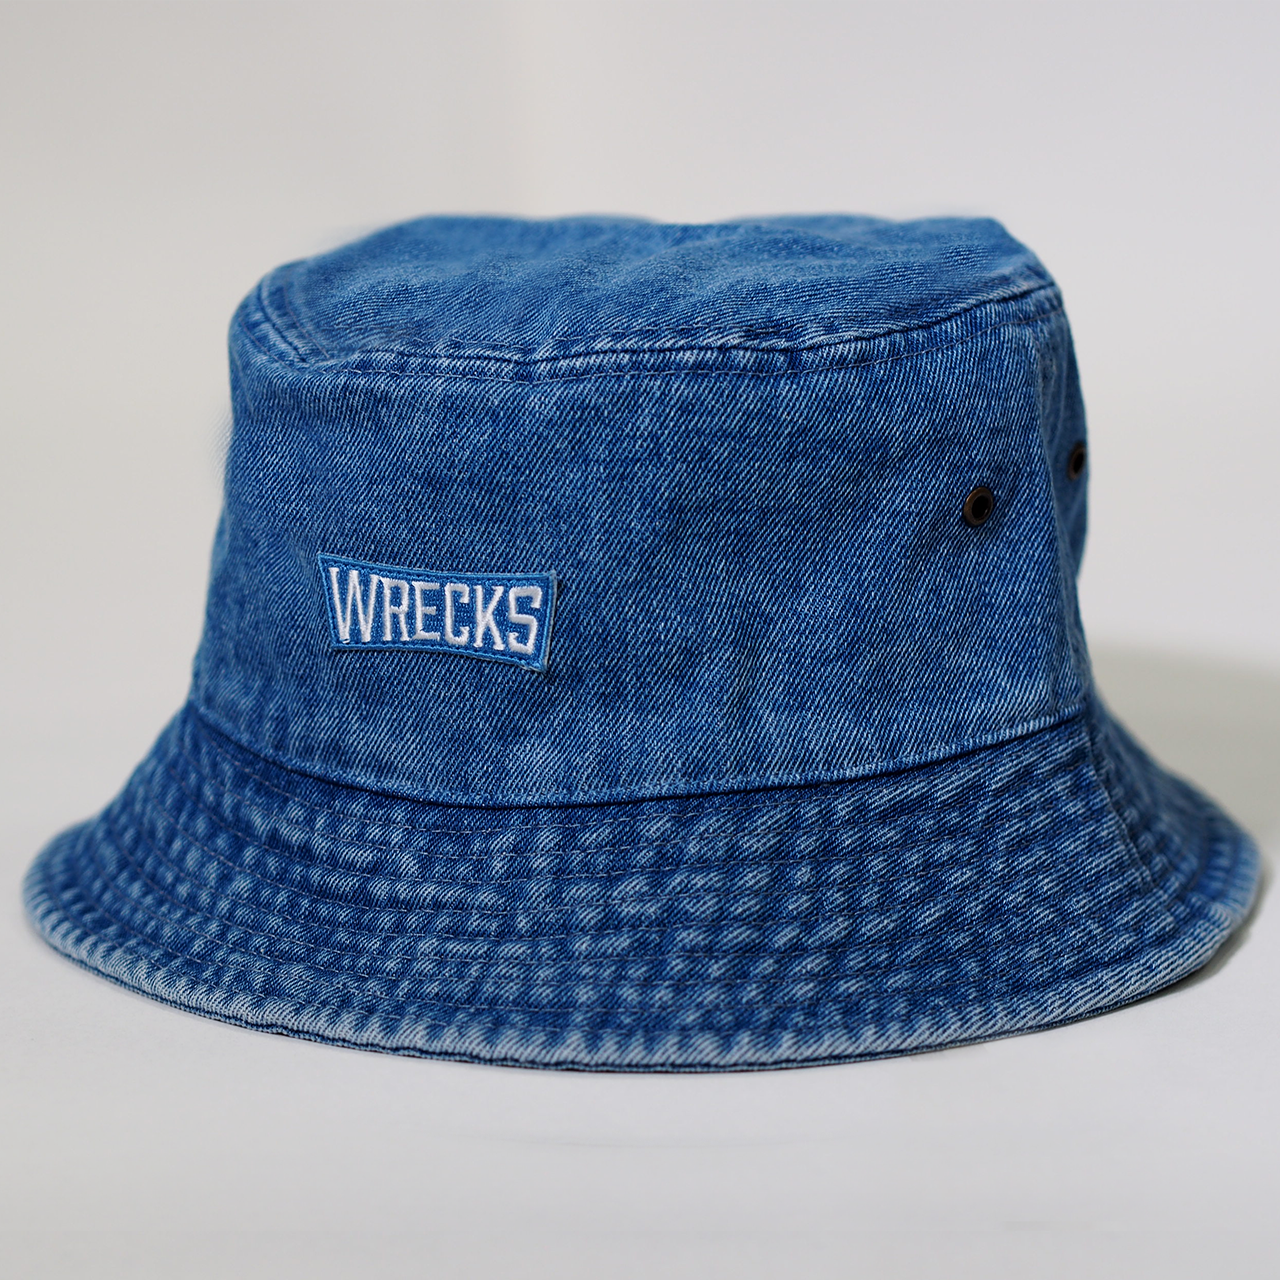 WRECKS BUCKET HAT -LIGHT BLUE-